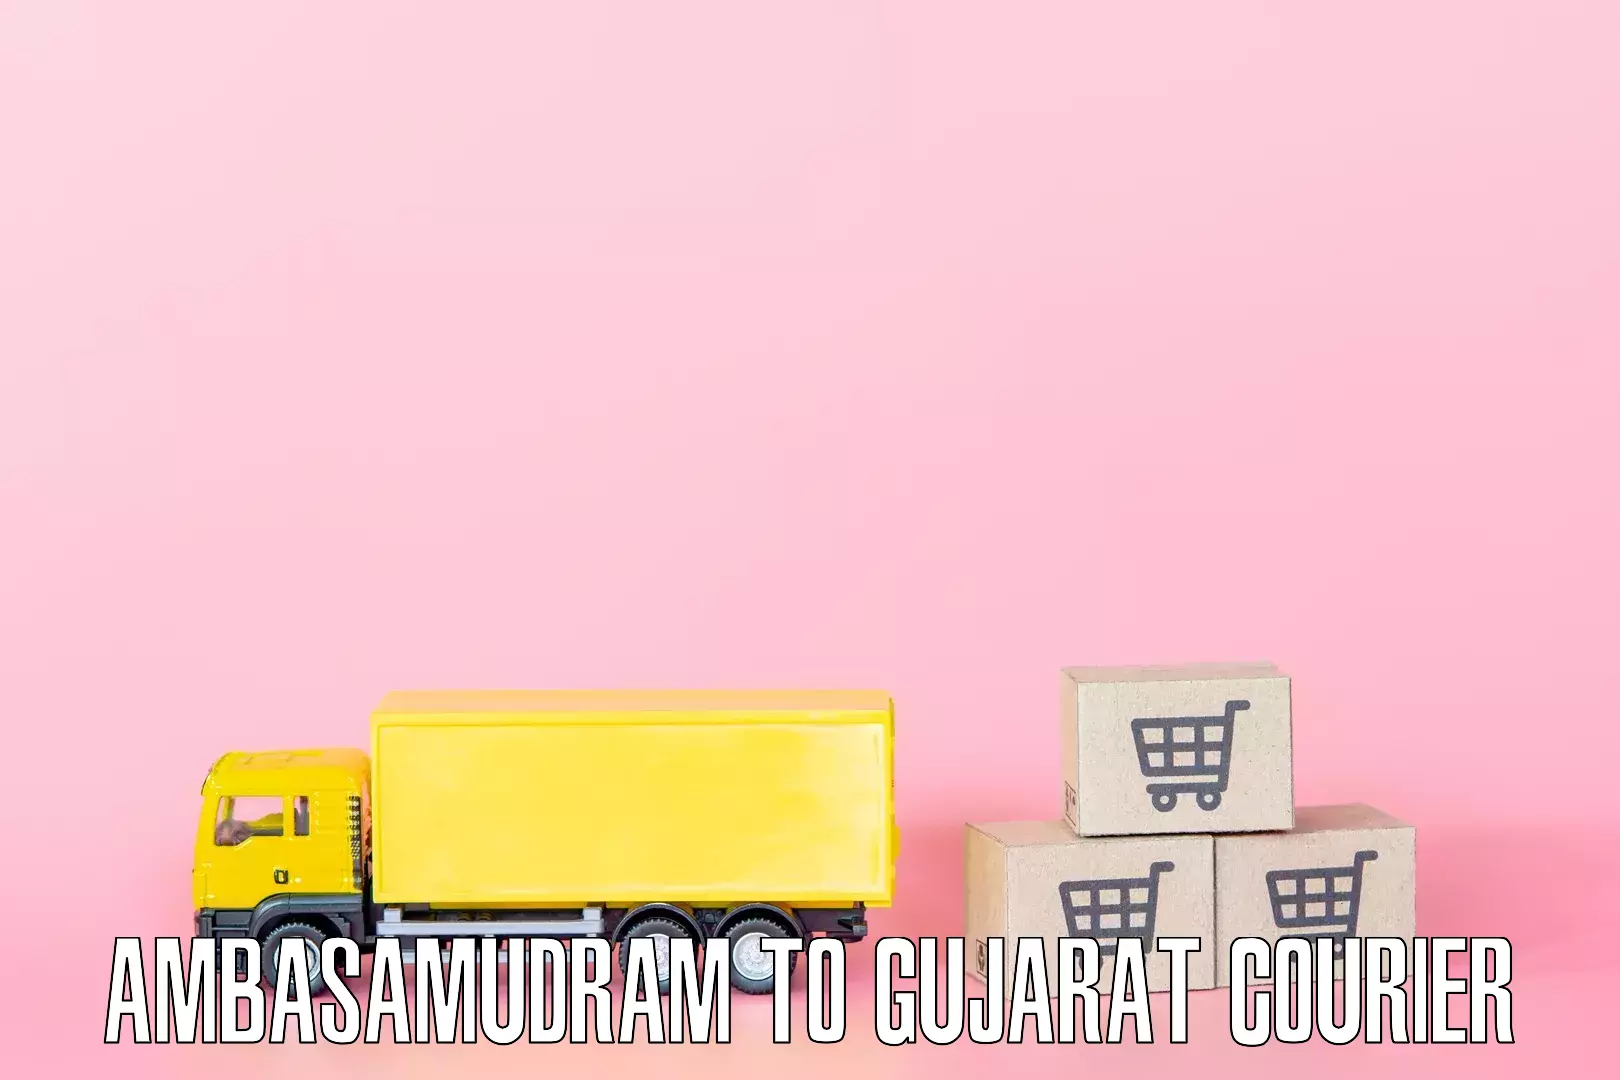 Furniture transport service Ambasamudram to Gujarat